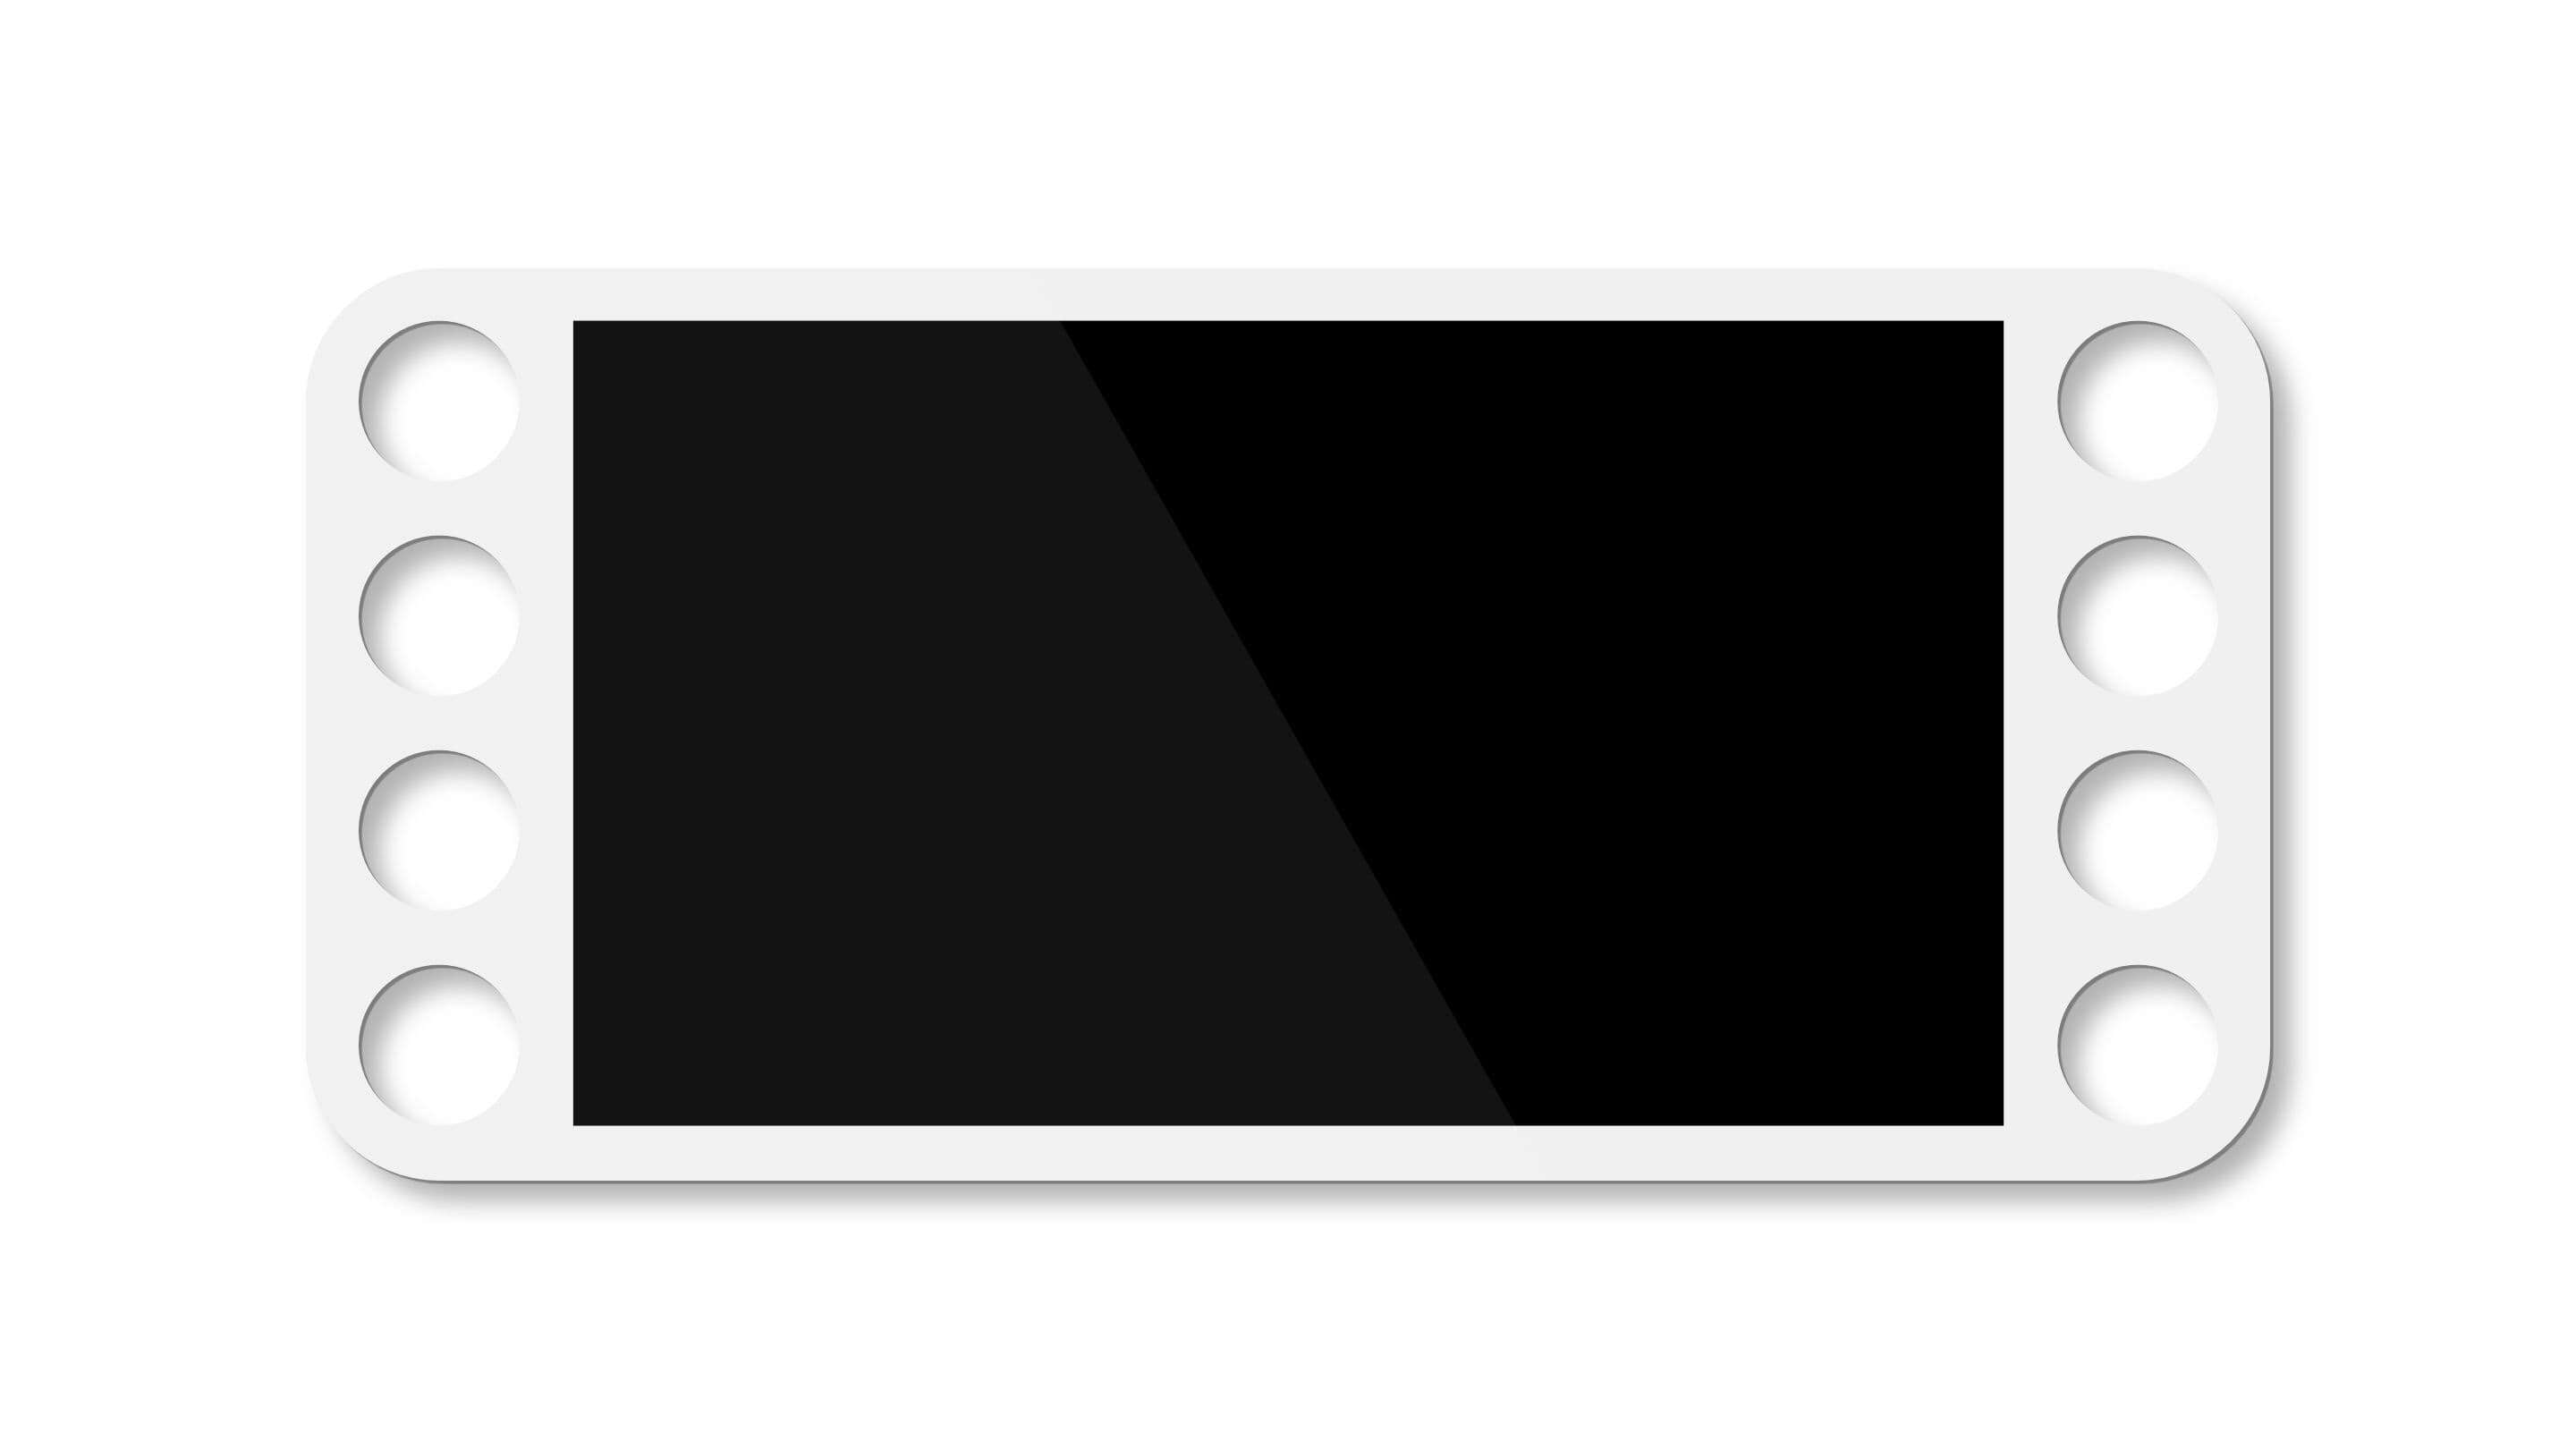 টাচ স্ক্রিন - হোয়াইট পলিকার্বোনেট টাচ স্ক্রিন বন্ডেড মেডিকেল একটি সাদা সীমানা সহ একটি কালো আয়তক্ষেত্রাকার বস্তু